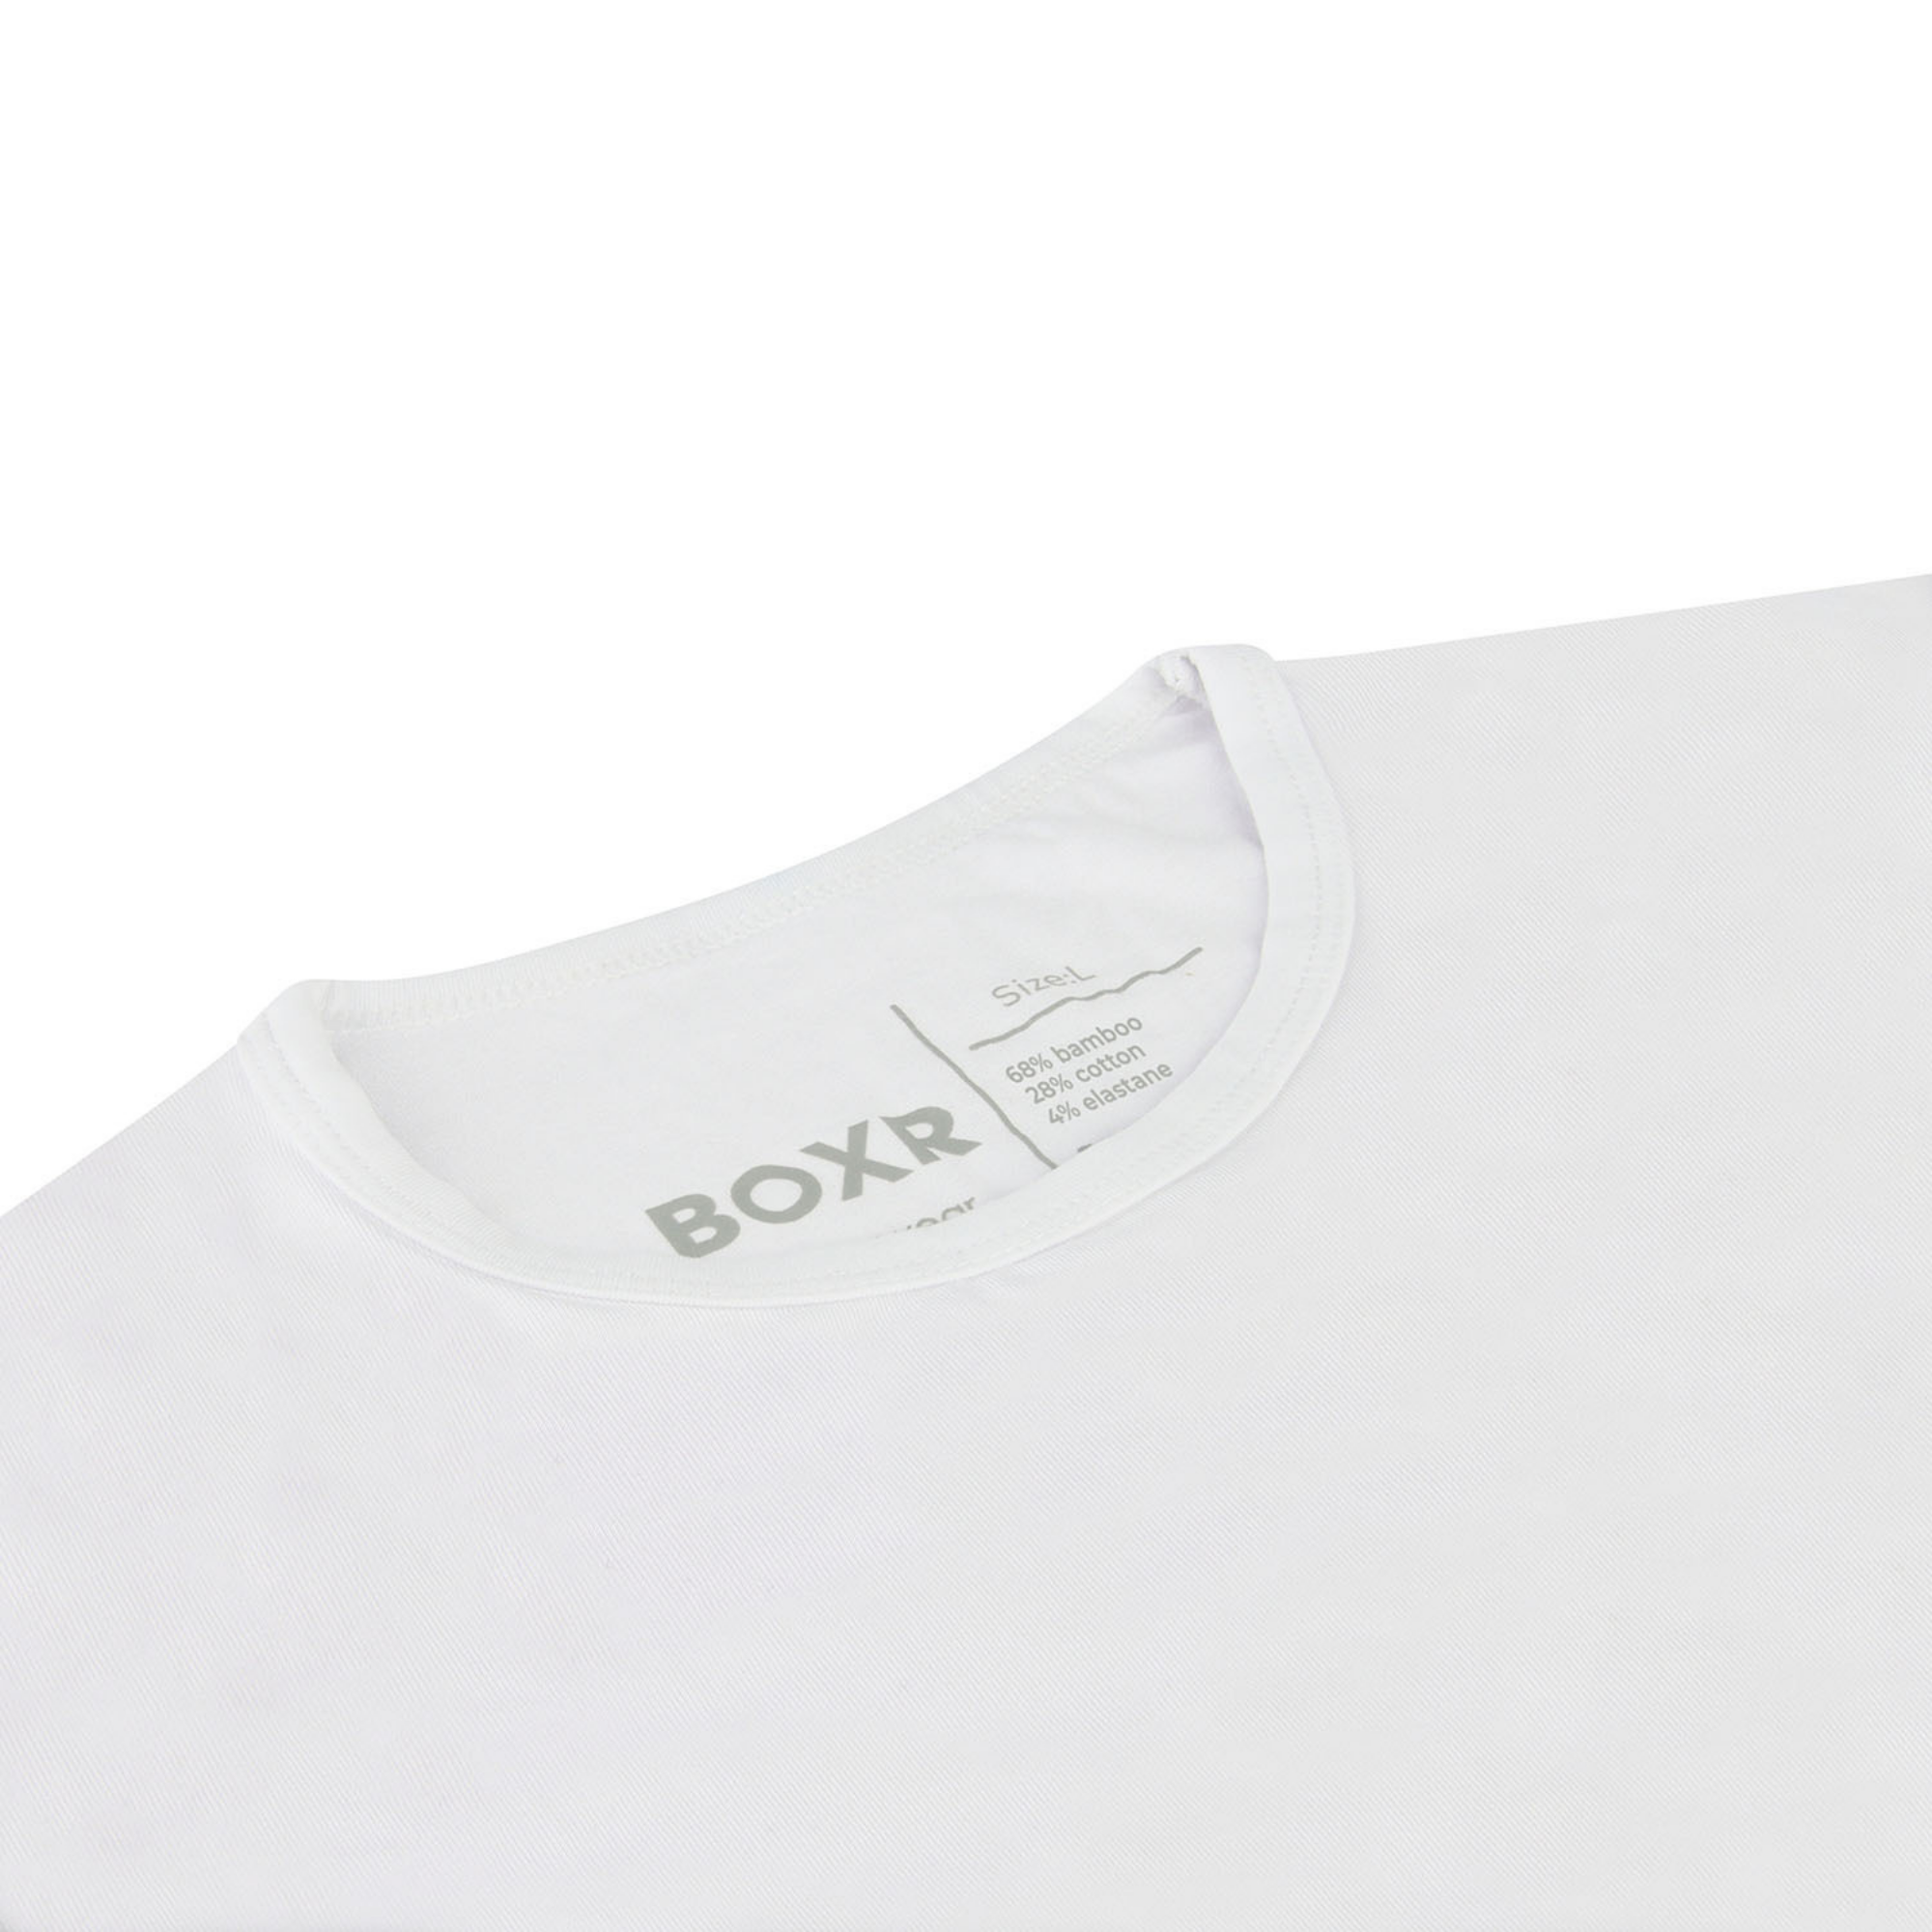 BOXR | T-shirt en bambou - Lot de 6 - Multicolore